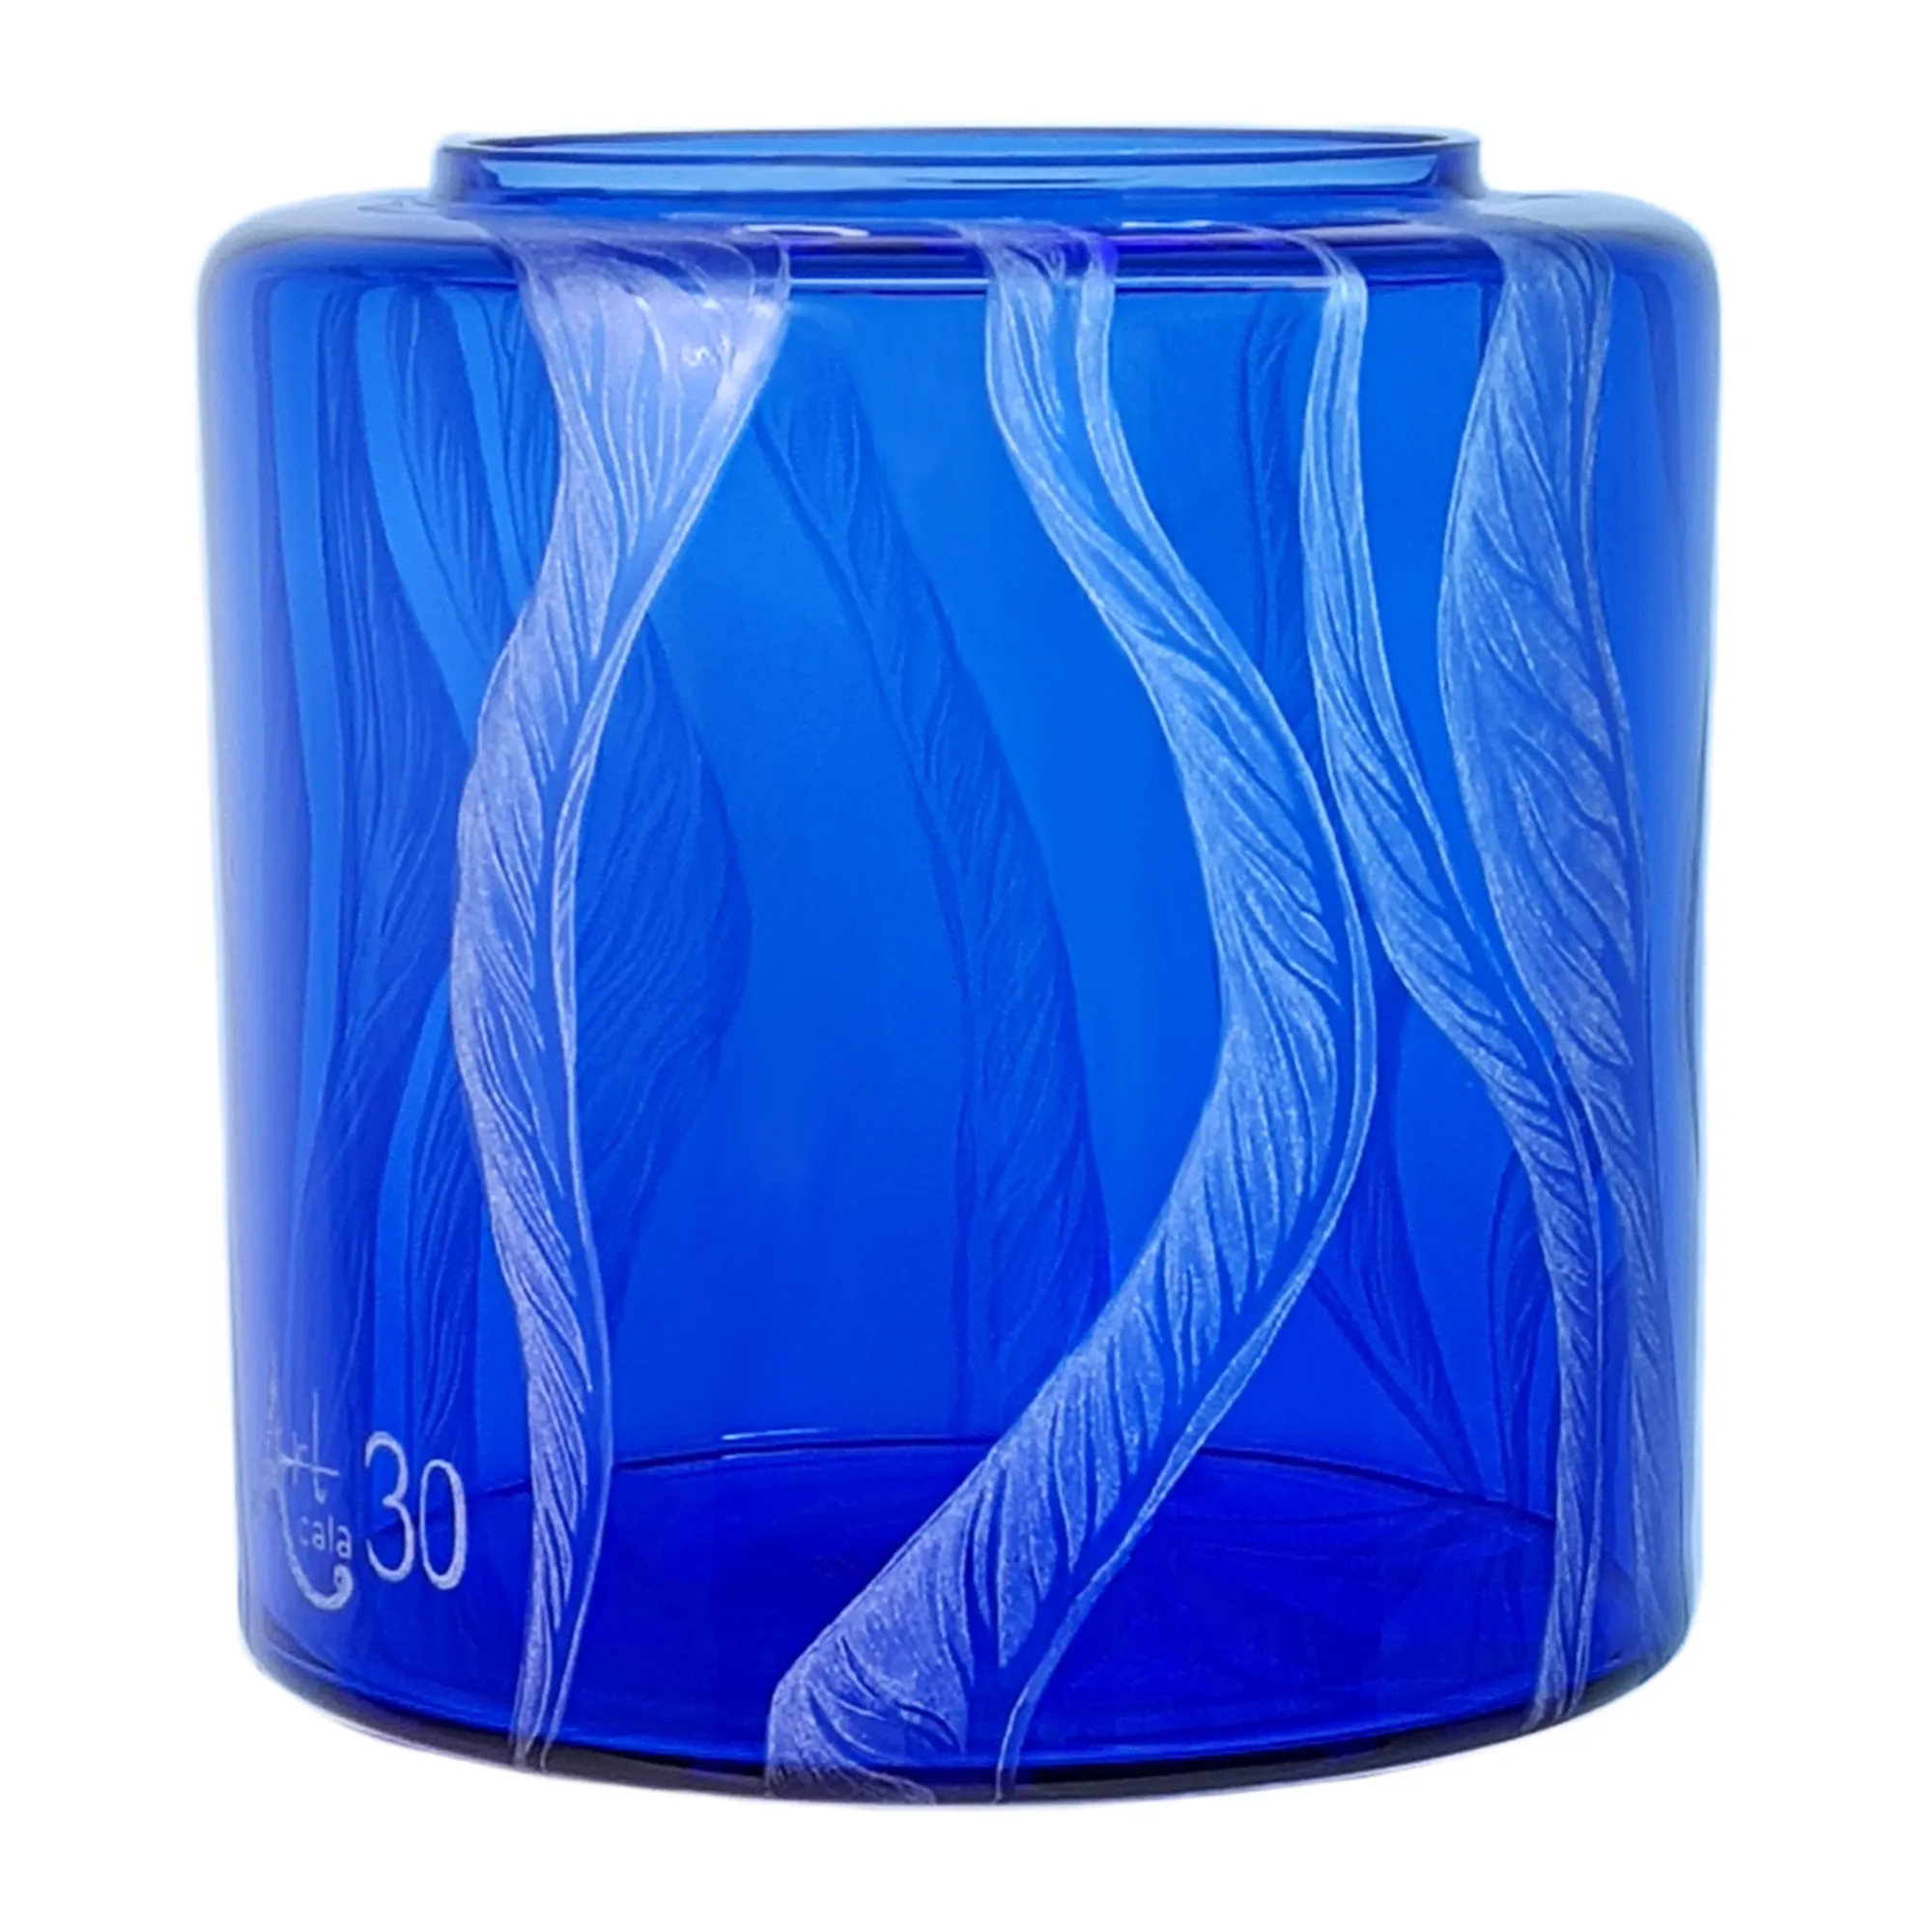 Vorratstank für Wasserfilter Mini mit einer Handgravur. Die Gravur zeigt, auf blauem Glas. Wellen die in welligen Linien gerade am Glas noch oben gehen, die Wellen verteilen sich rund um das runde Glas. Ansicht von links.